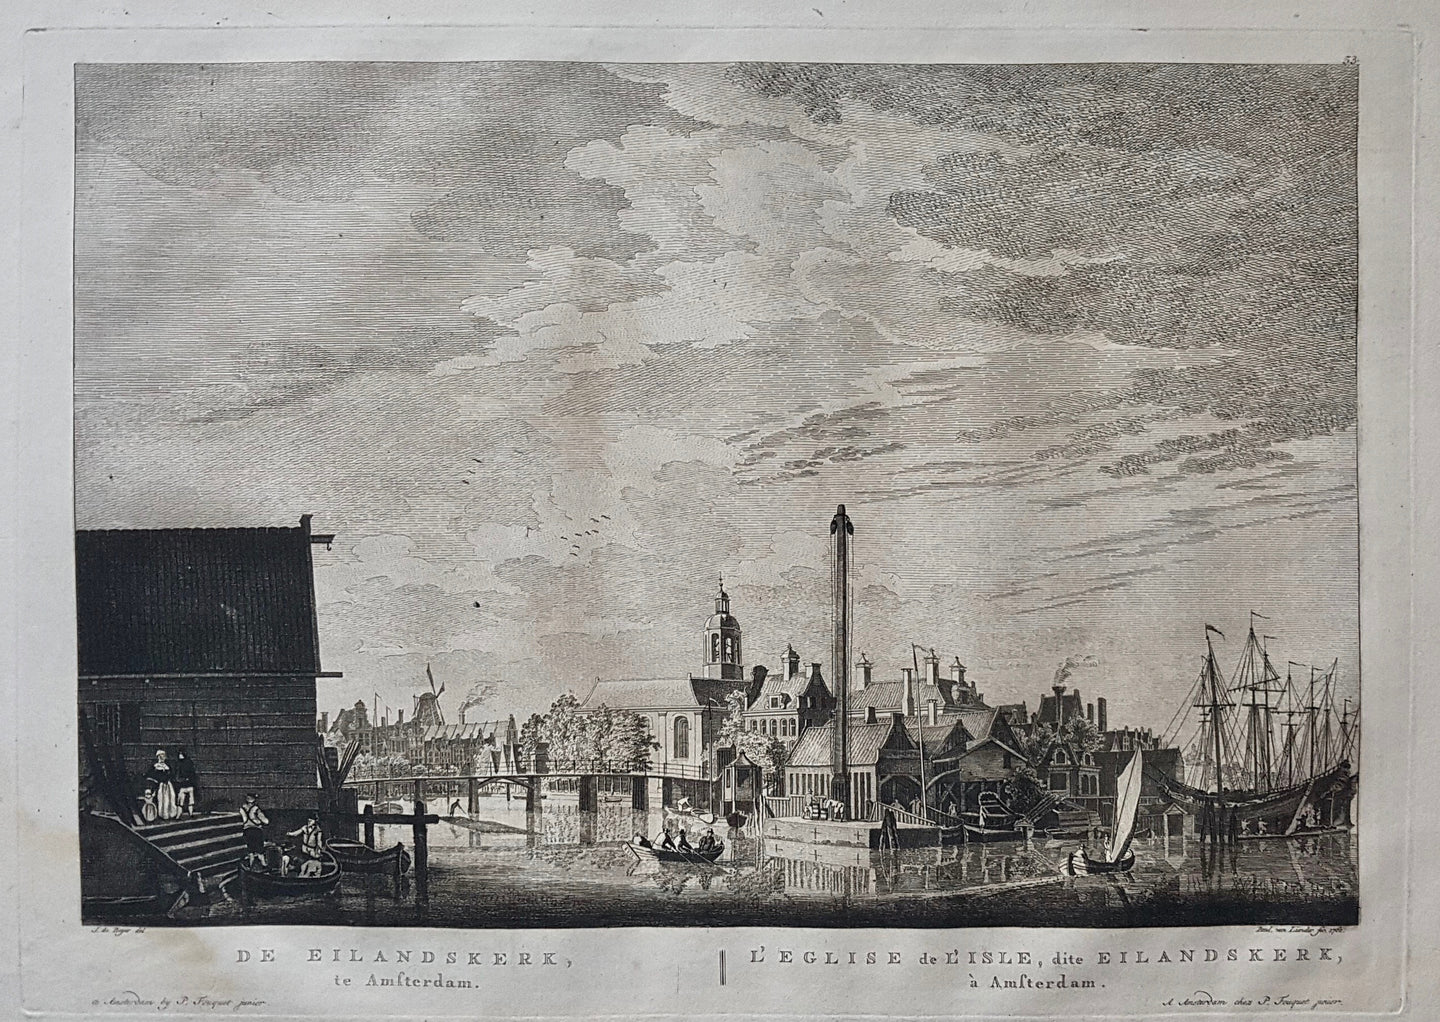 AMSTERDAM Bickerseiland Eilandskerk - P Fouquet - 1783